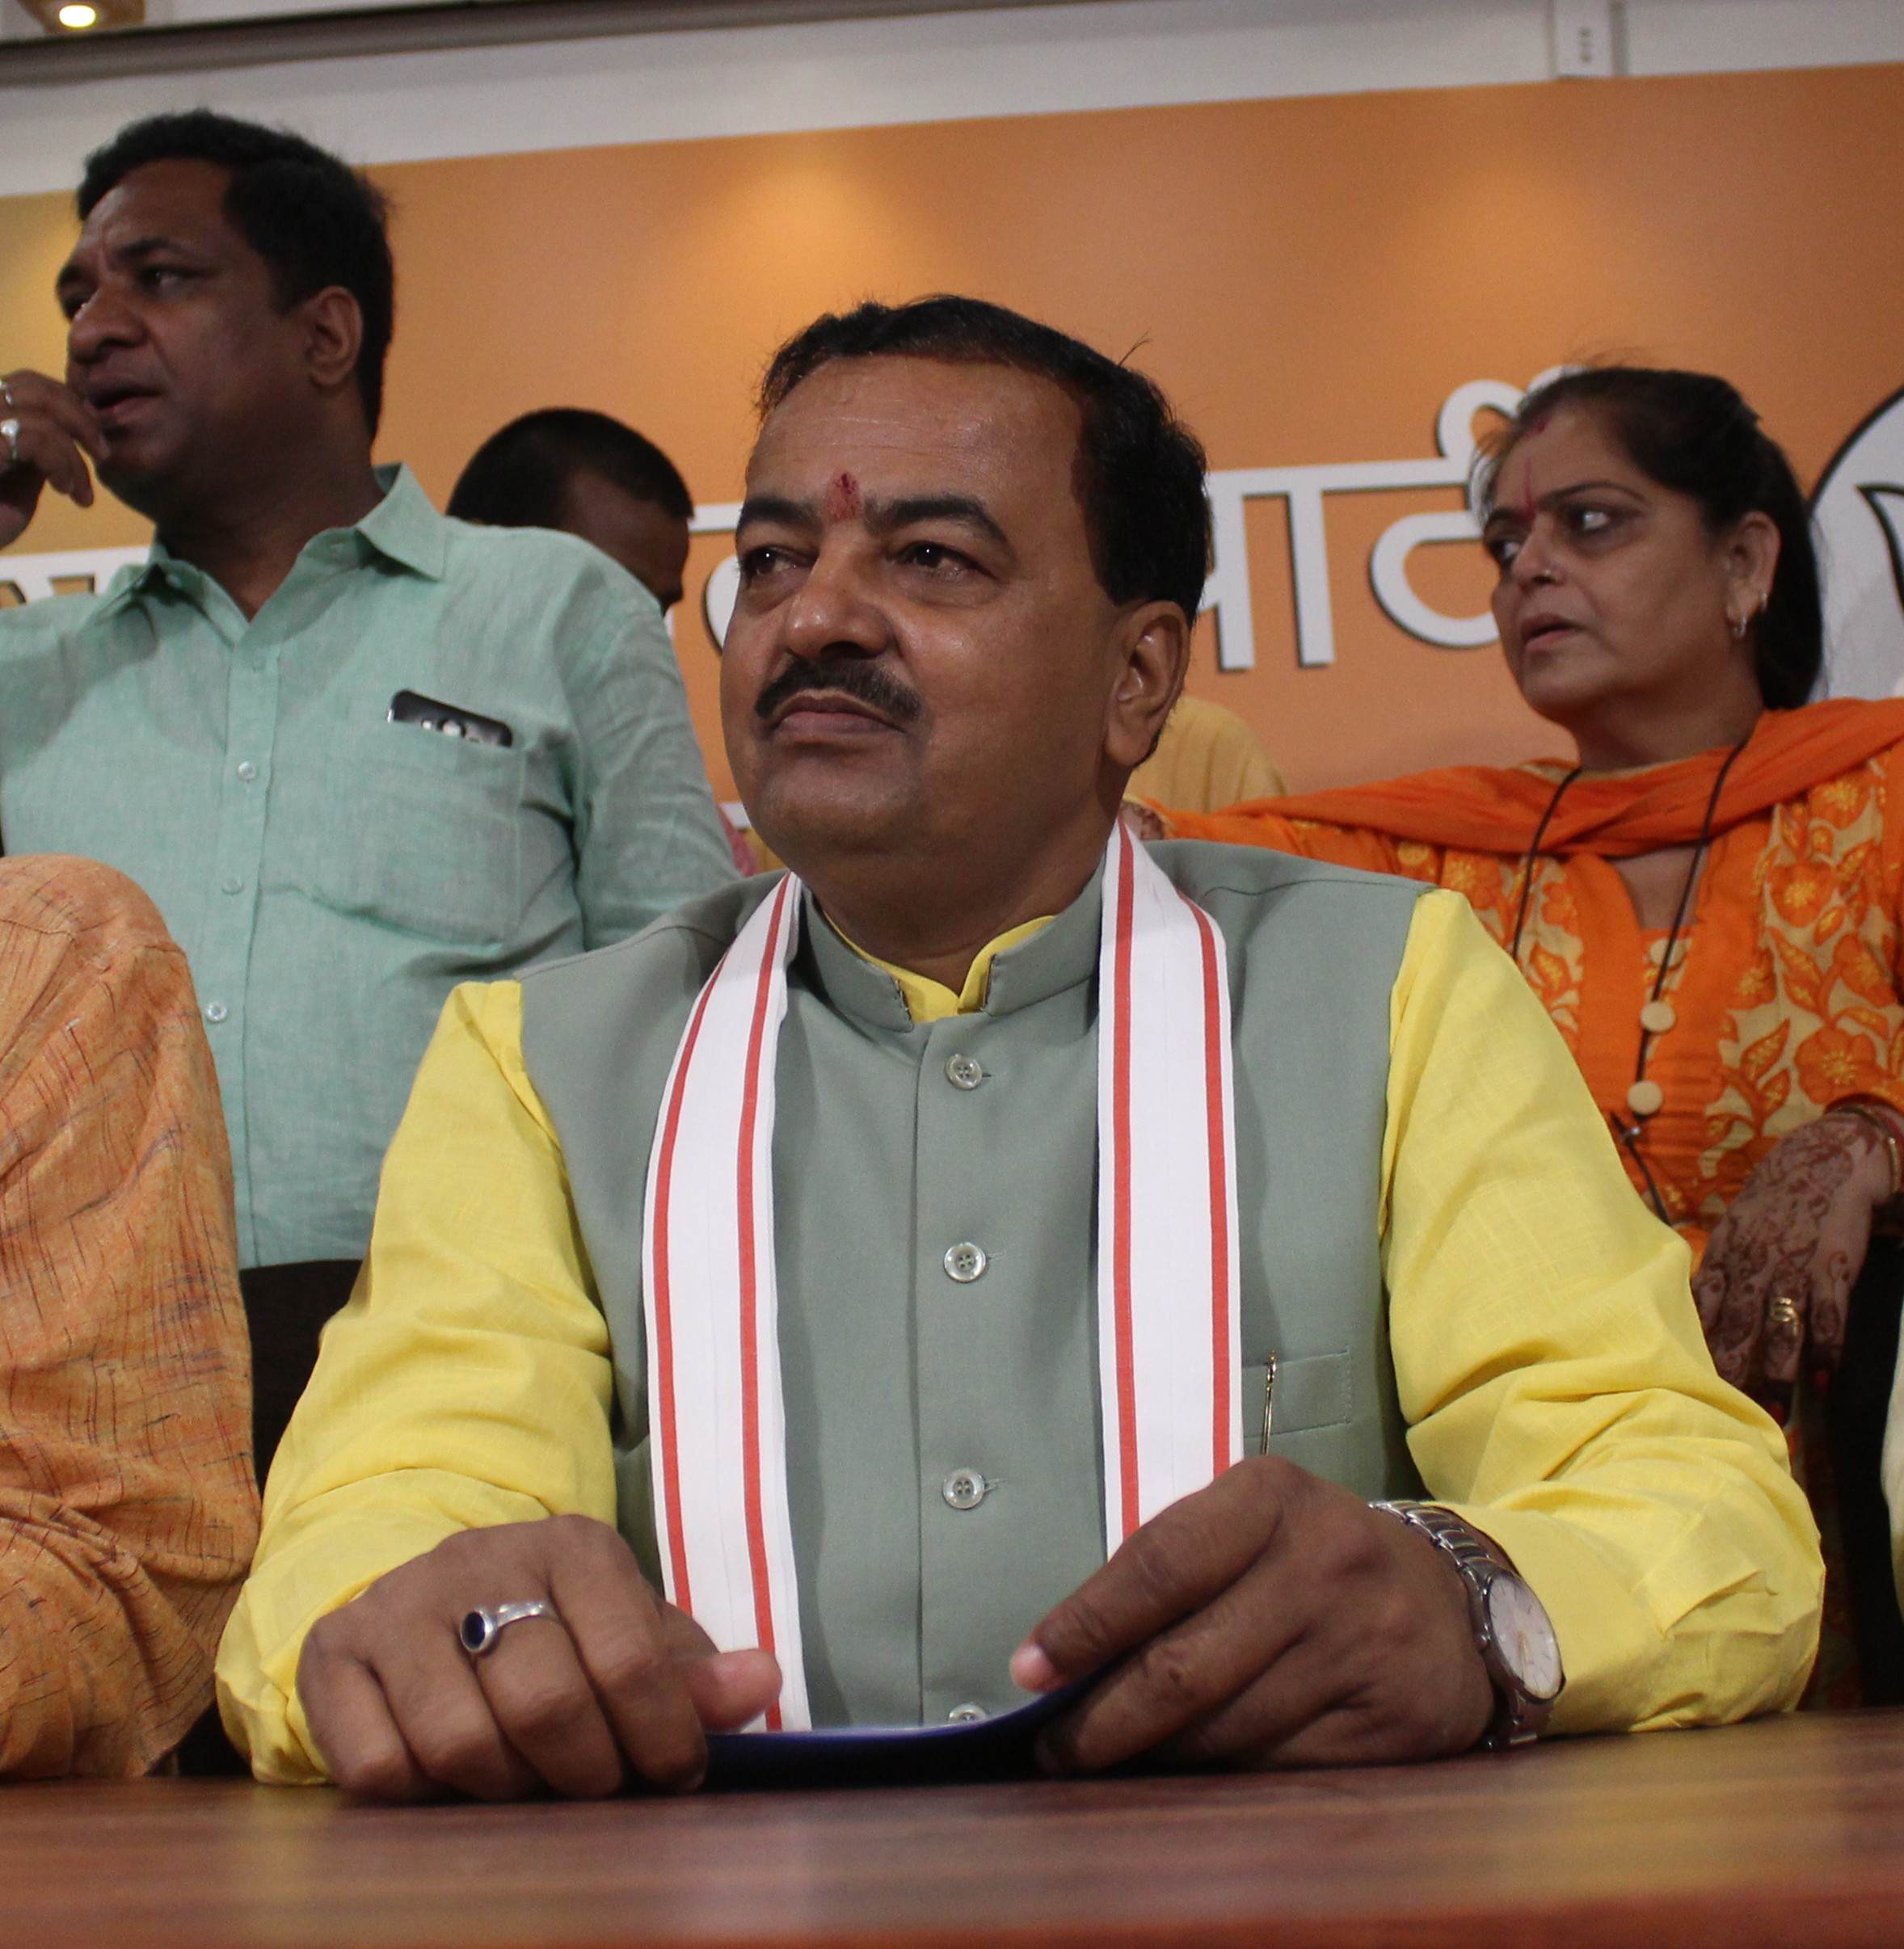 इस बार विधानसभा चुनाव में बजेगा भाजपा का डंका, जीतेंगे 300 सीटें:  केशव प्रसाद मौर्य